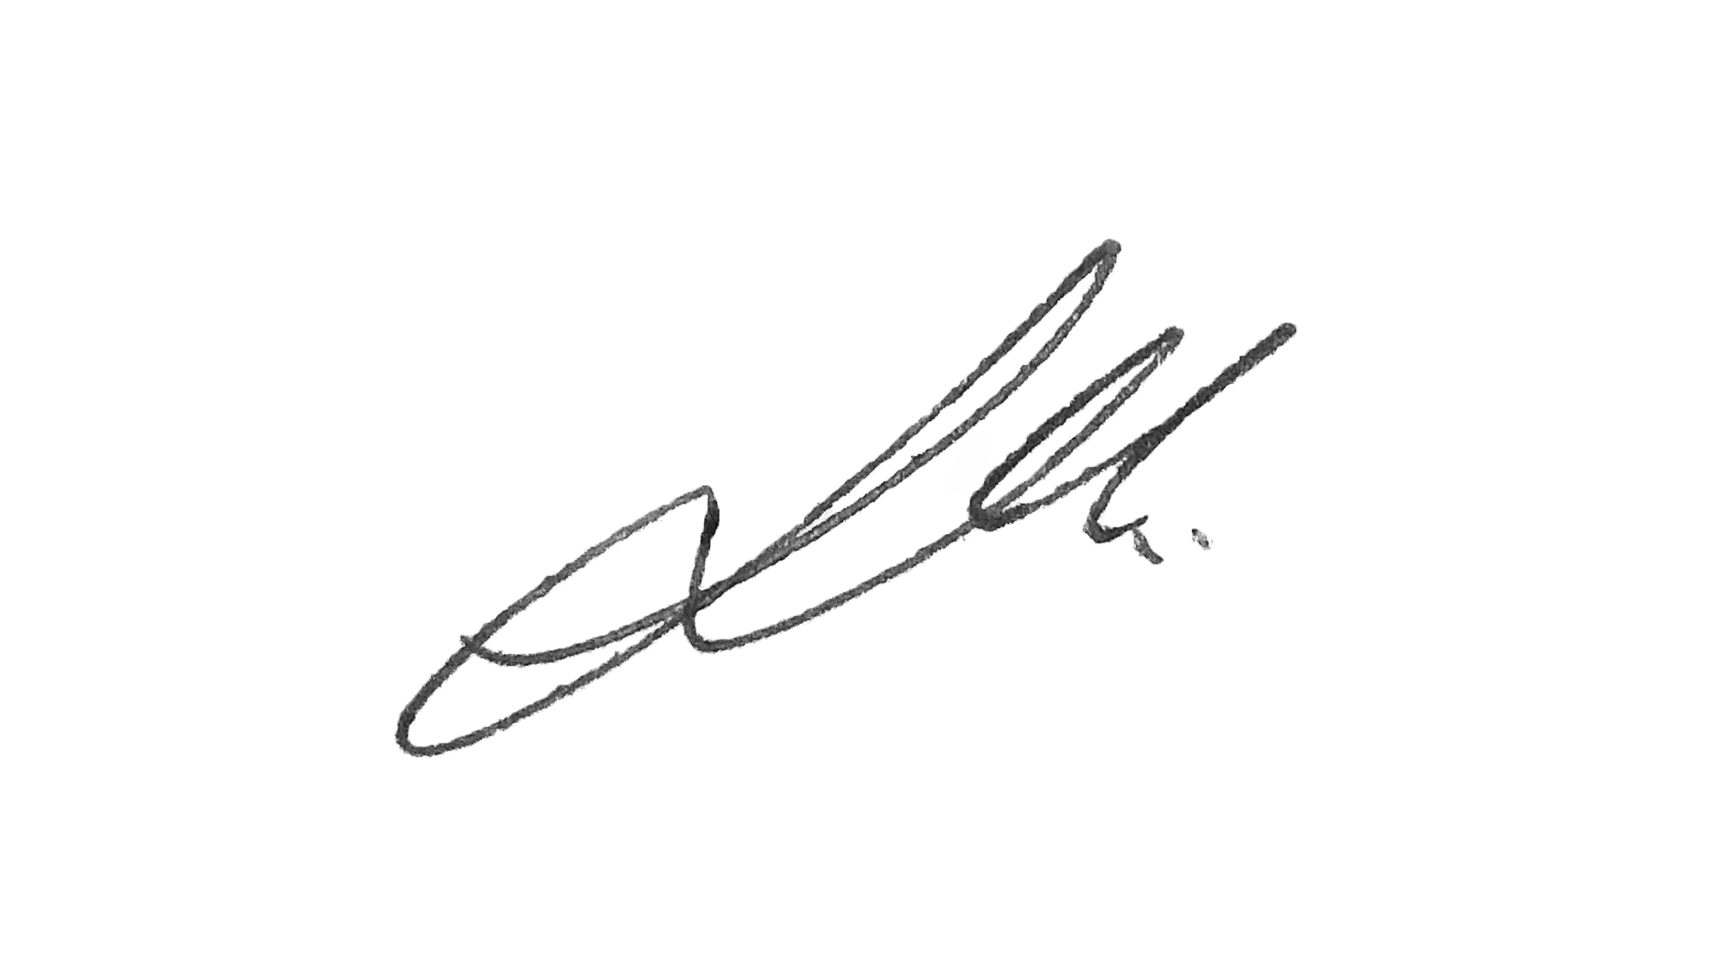 The signature of Felicia Masalla